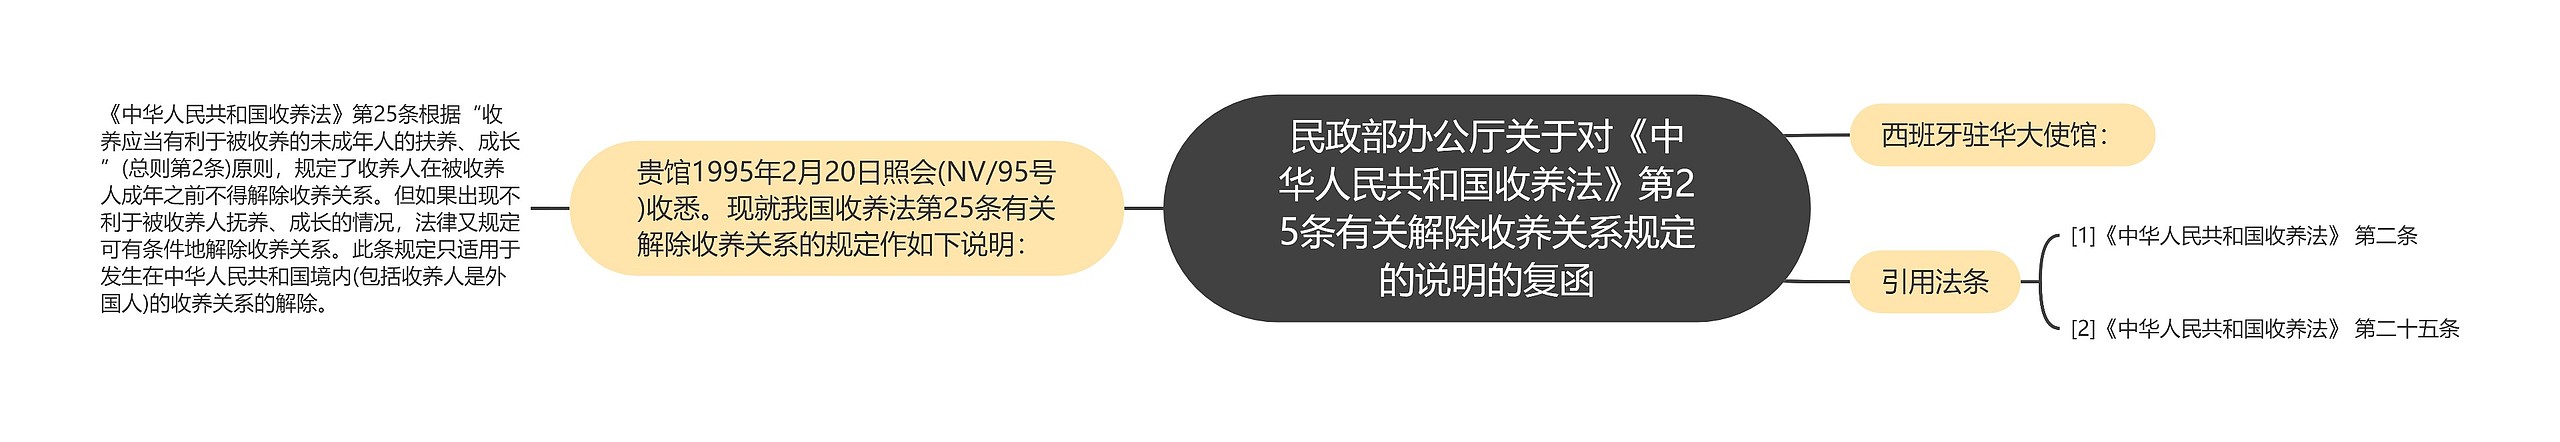 民政部办公厅关于对《中华人民共和国收养法》第25条有关解除收养关系规定的说明的复函